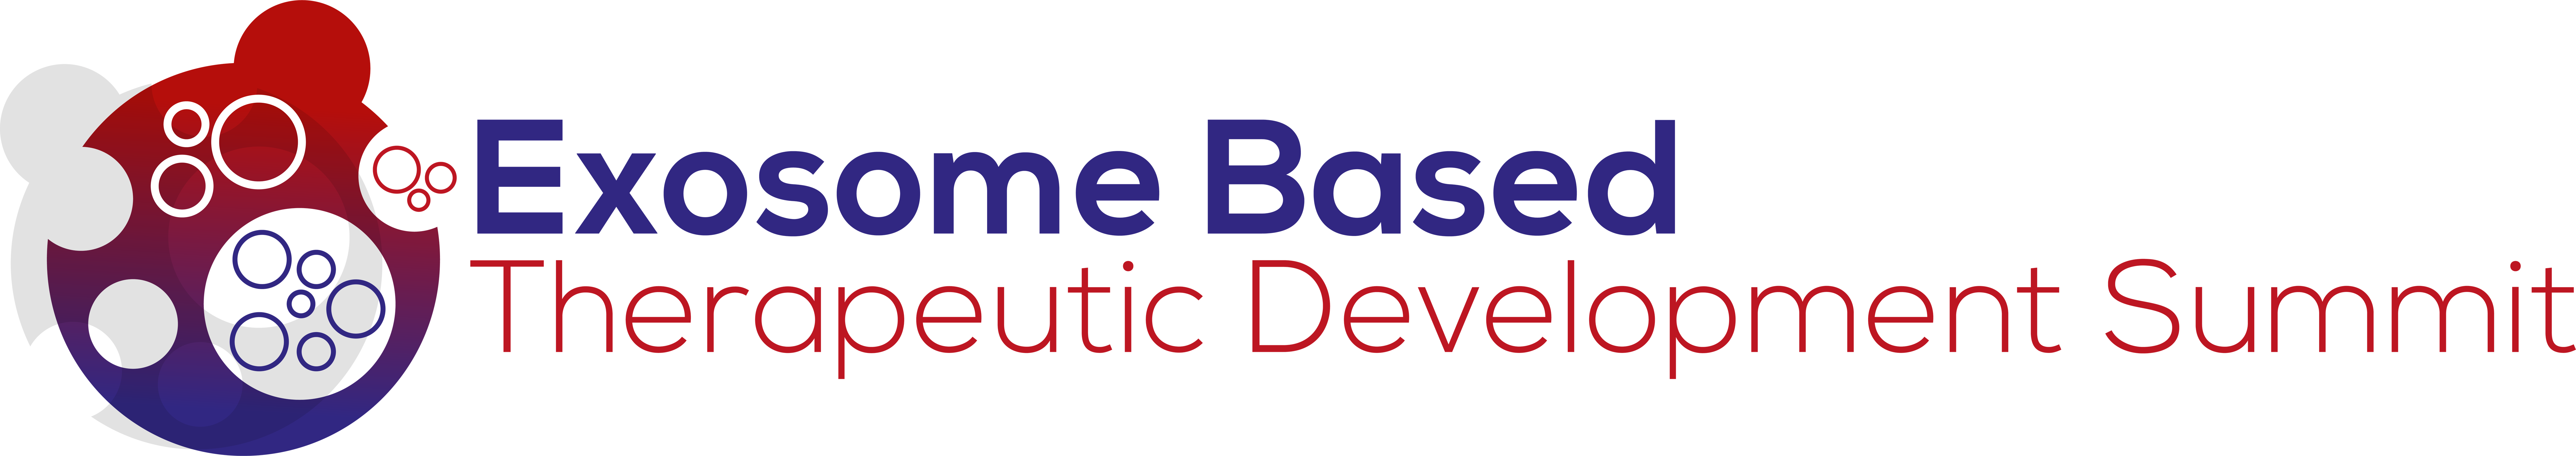 Exosome Based Therapeutics Summit logo